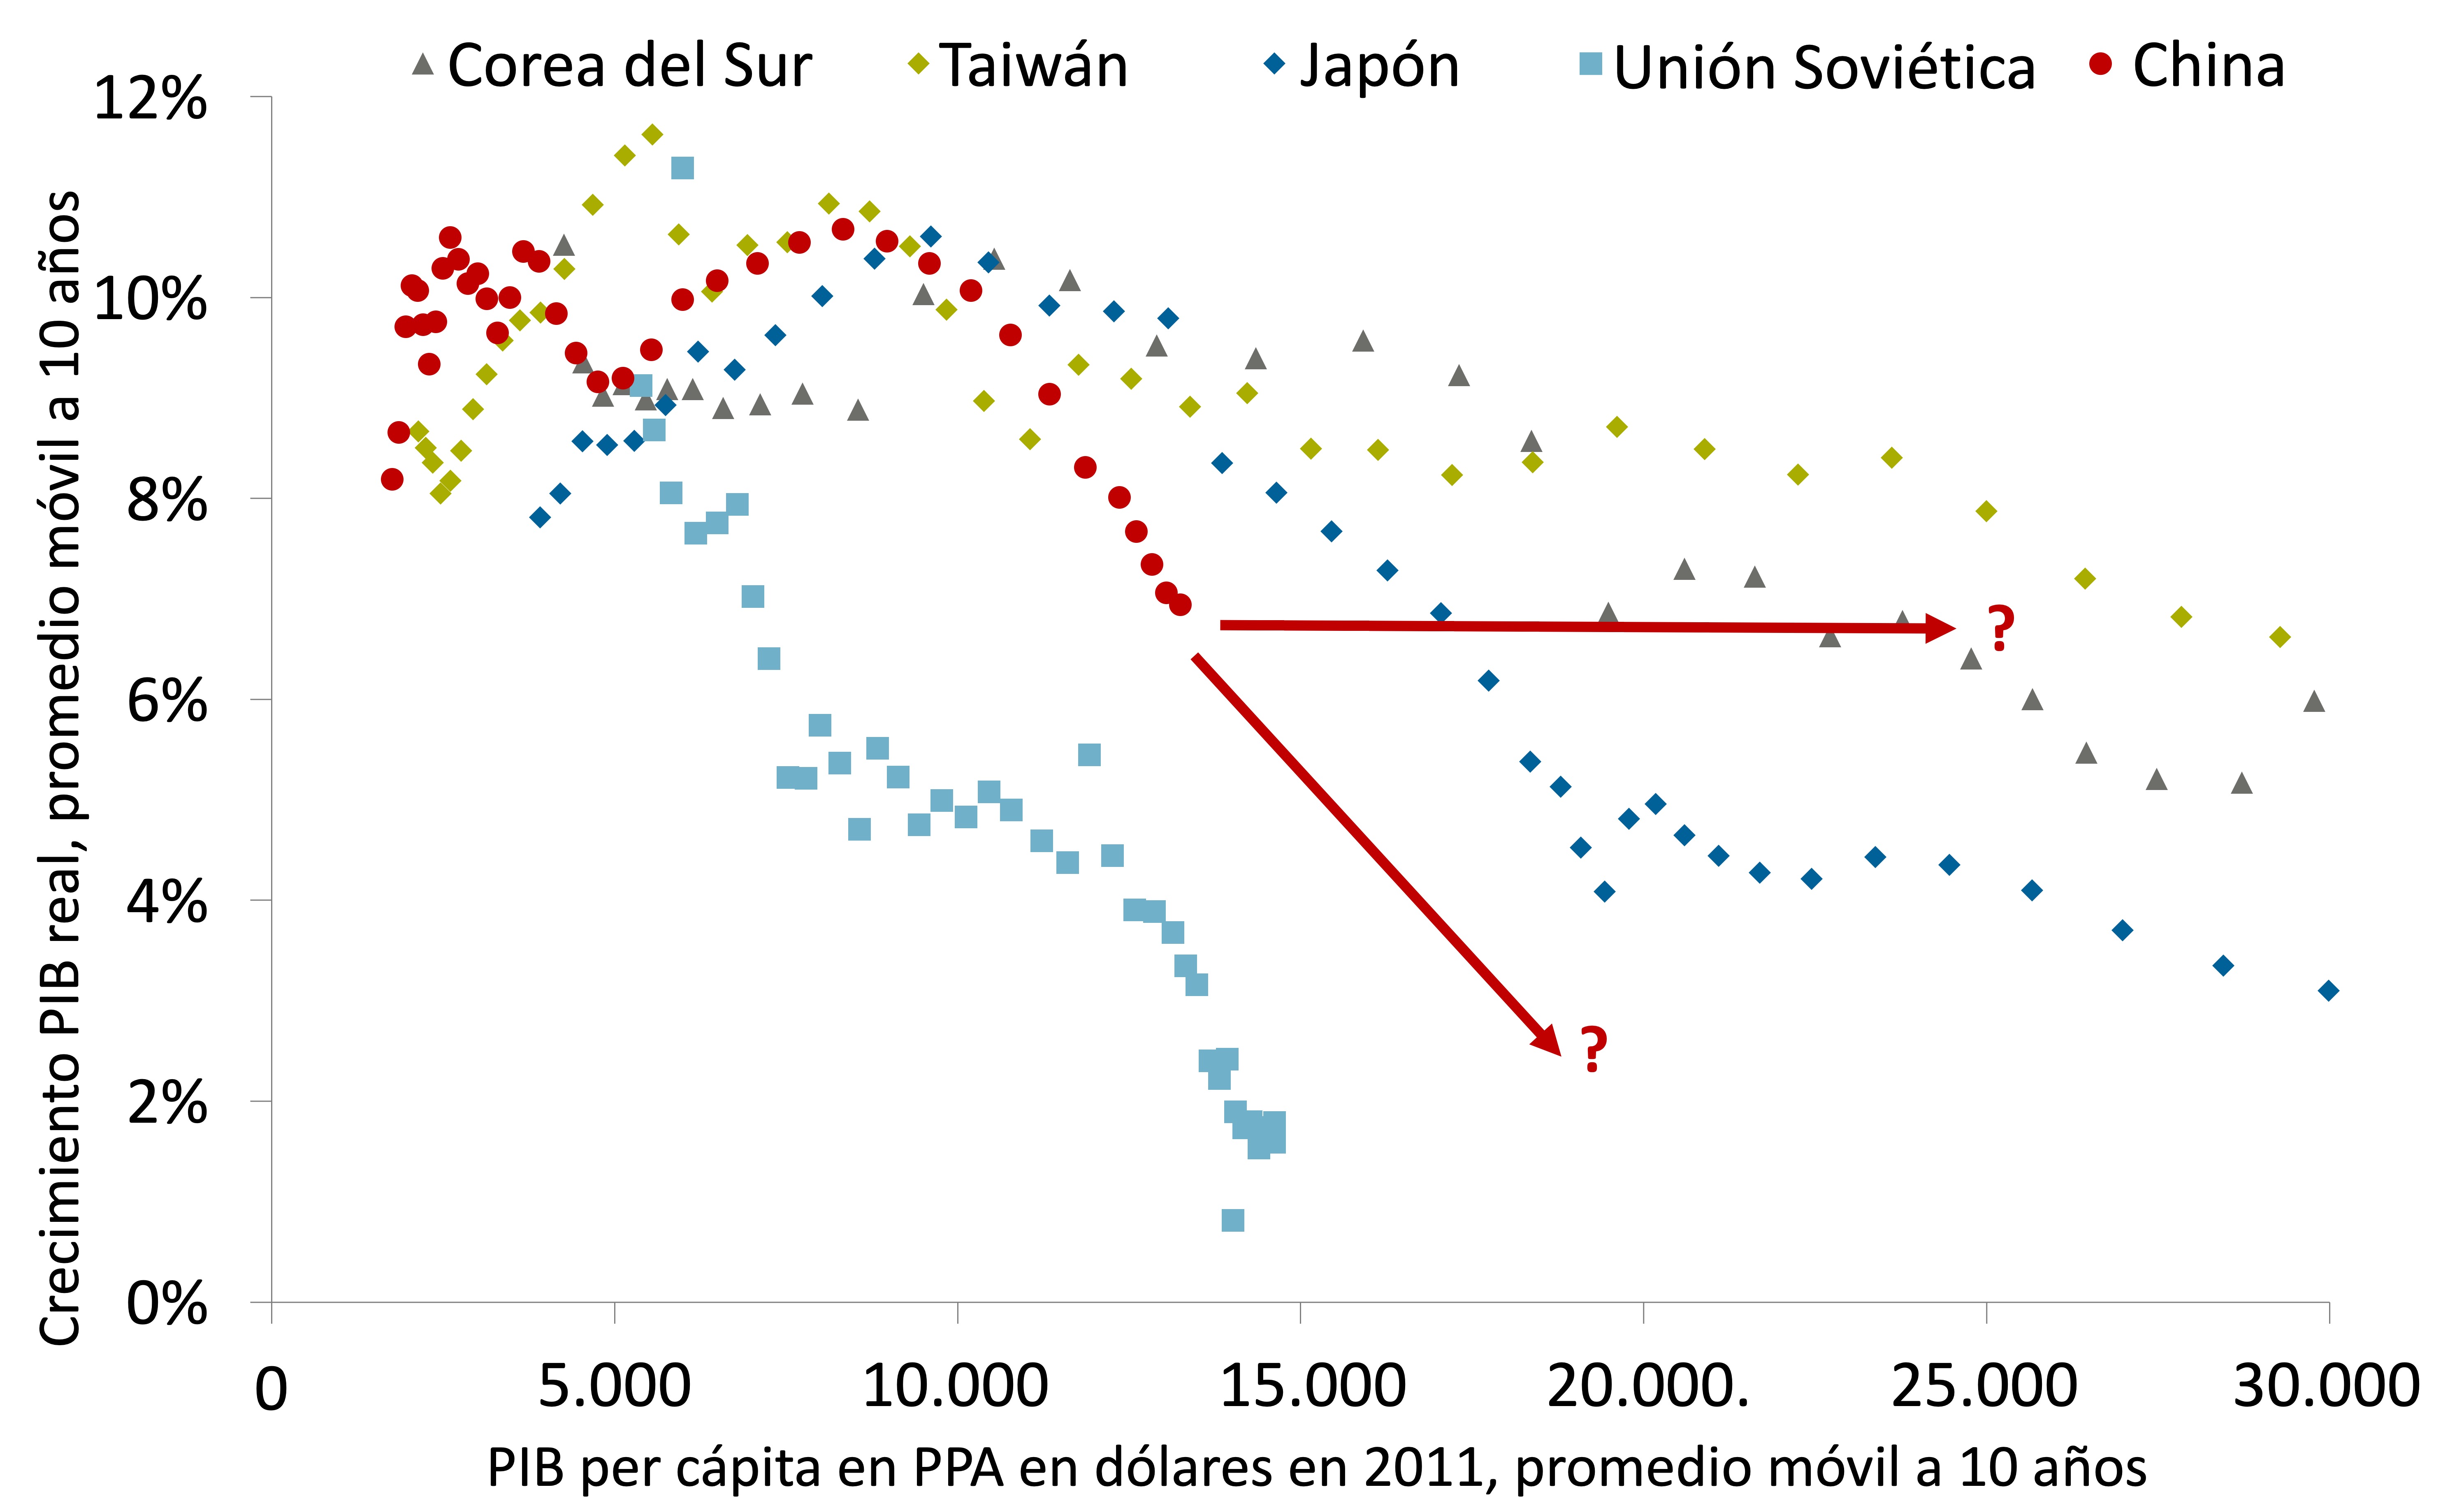 Reformas basadas en el mercado fueron clave para mantener mayores tasas de crecimiento, como Corea y Taiwán